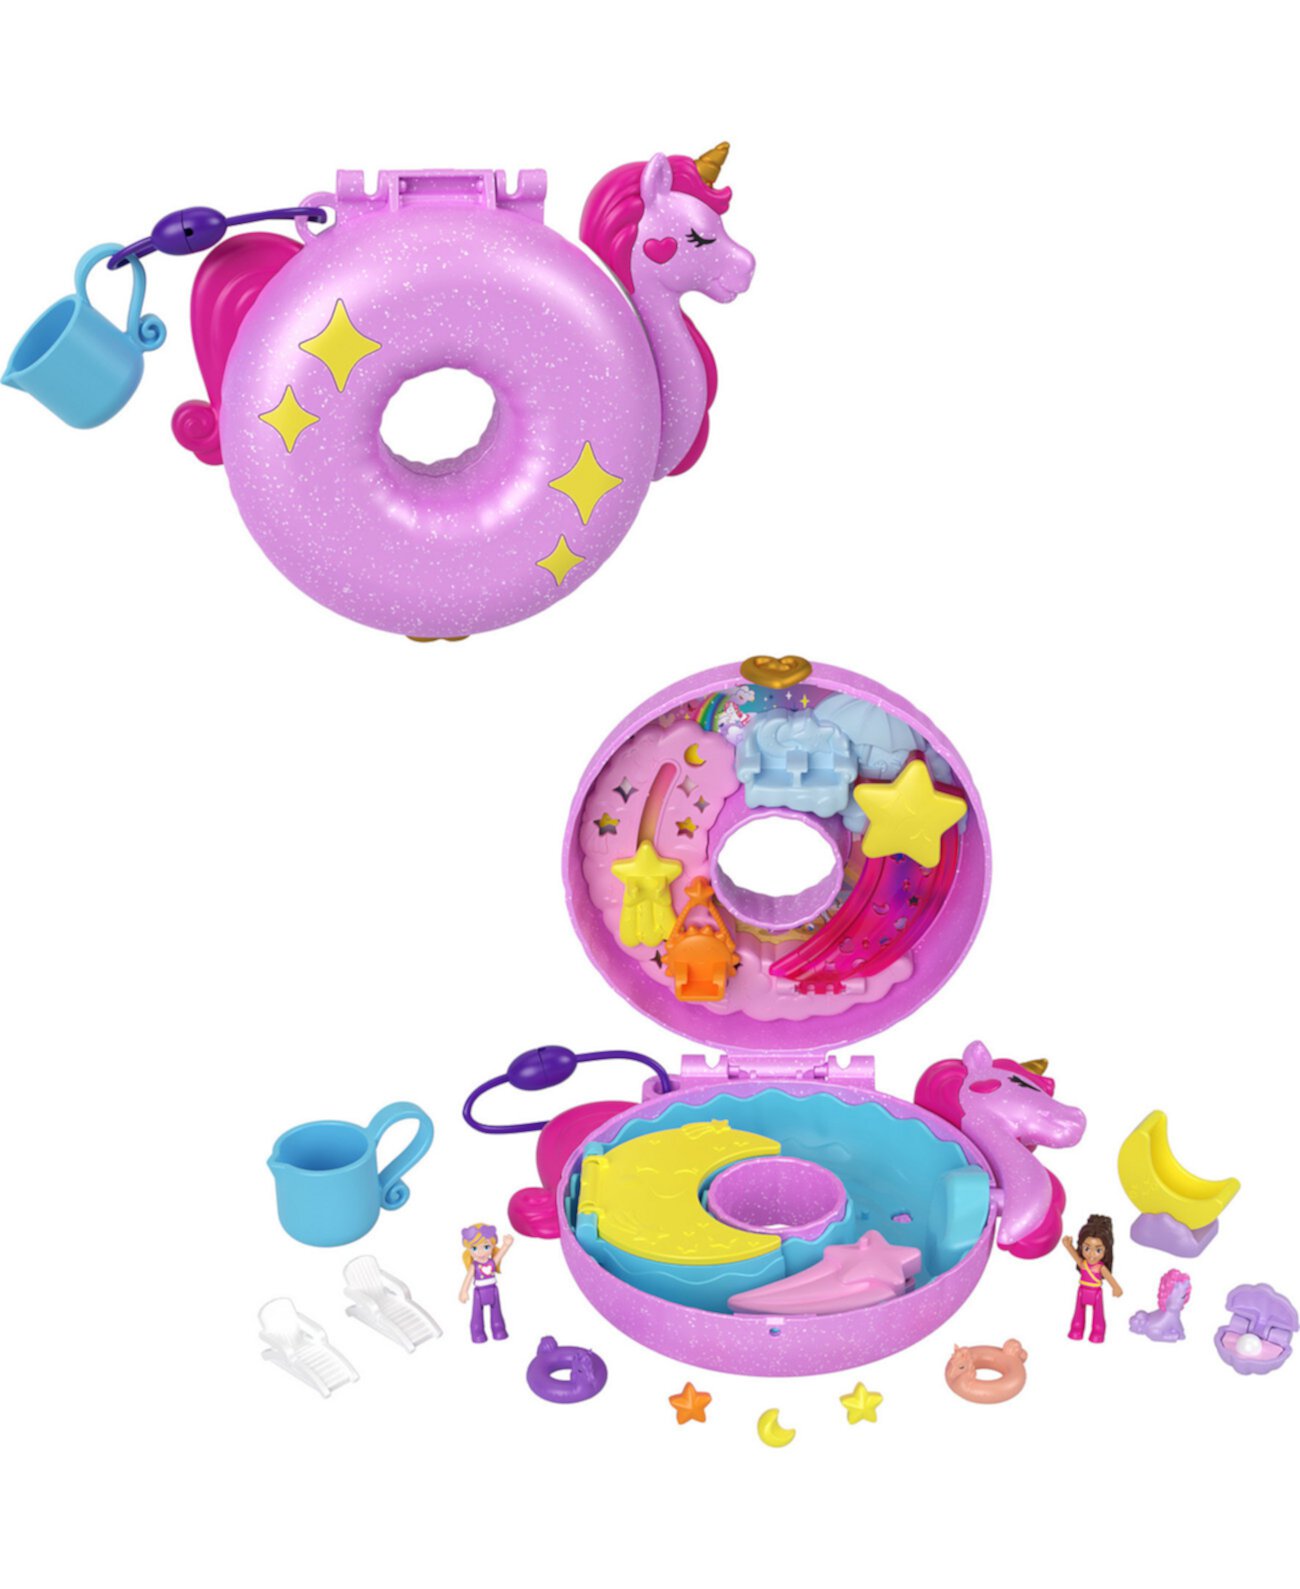 Куклы и игровой набор, игрушки-единороги, компактная плавучая лодка Sparkle Cove Adventure Unicorn Polly Pocket